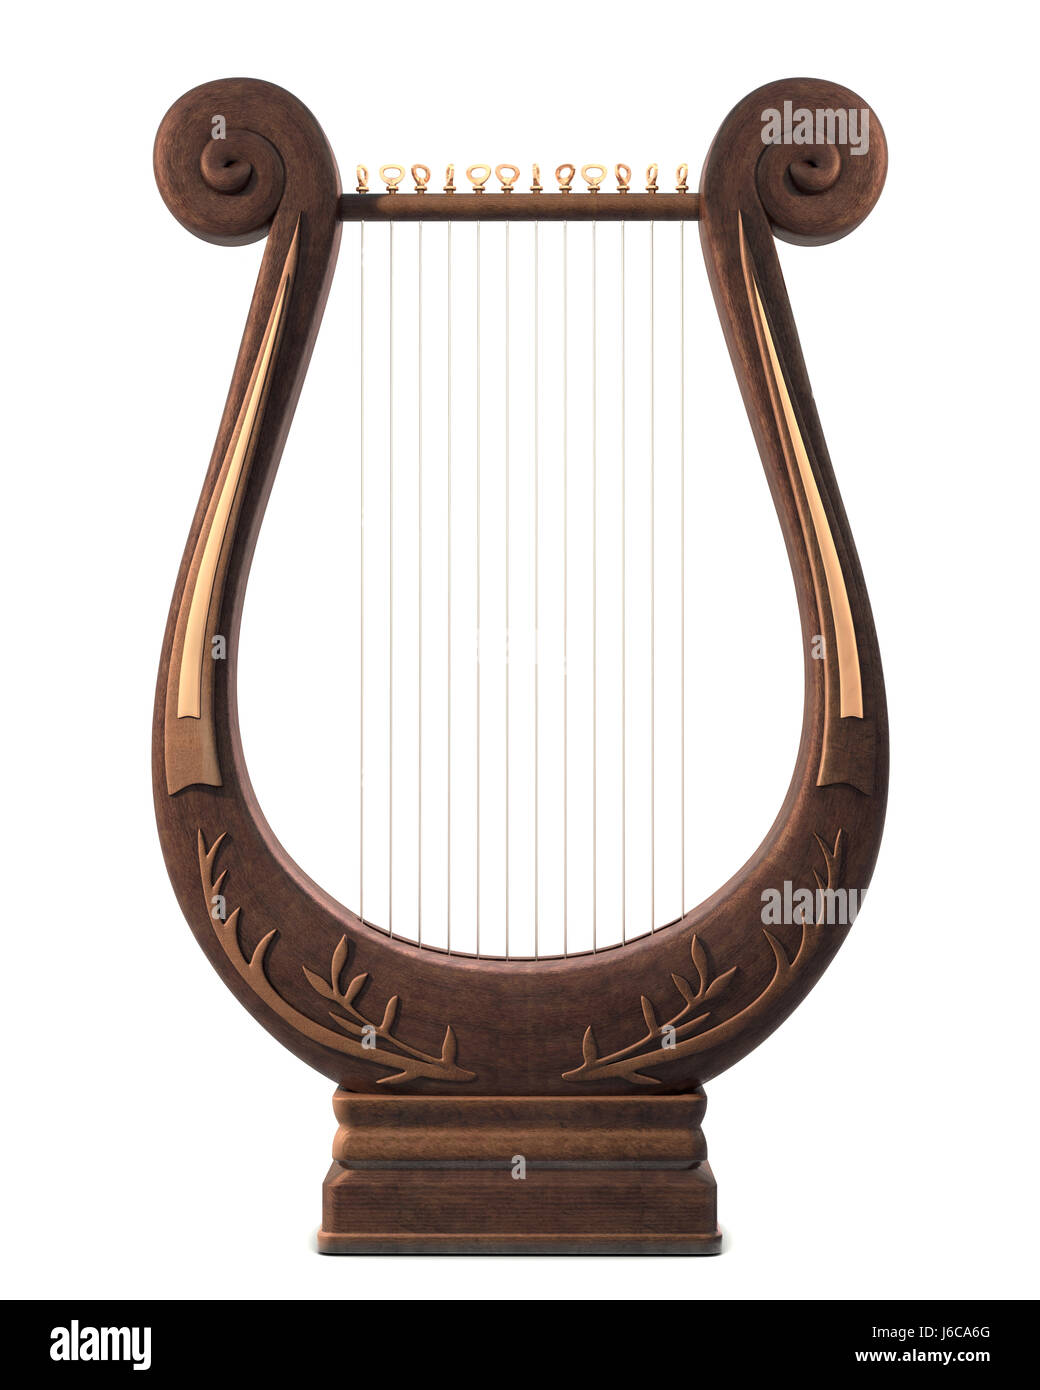 Orné de musique ancienne musique rétro lyre instrument de musique musical isolé symmetry Banque D'Images